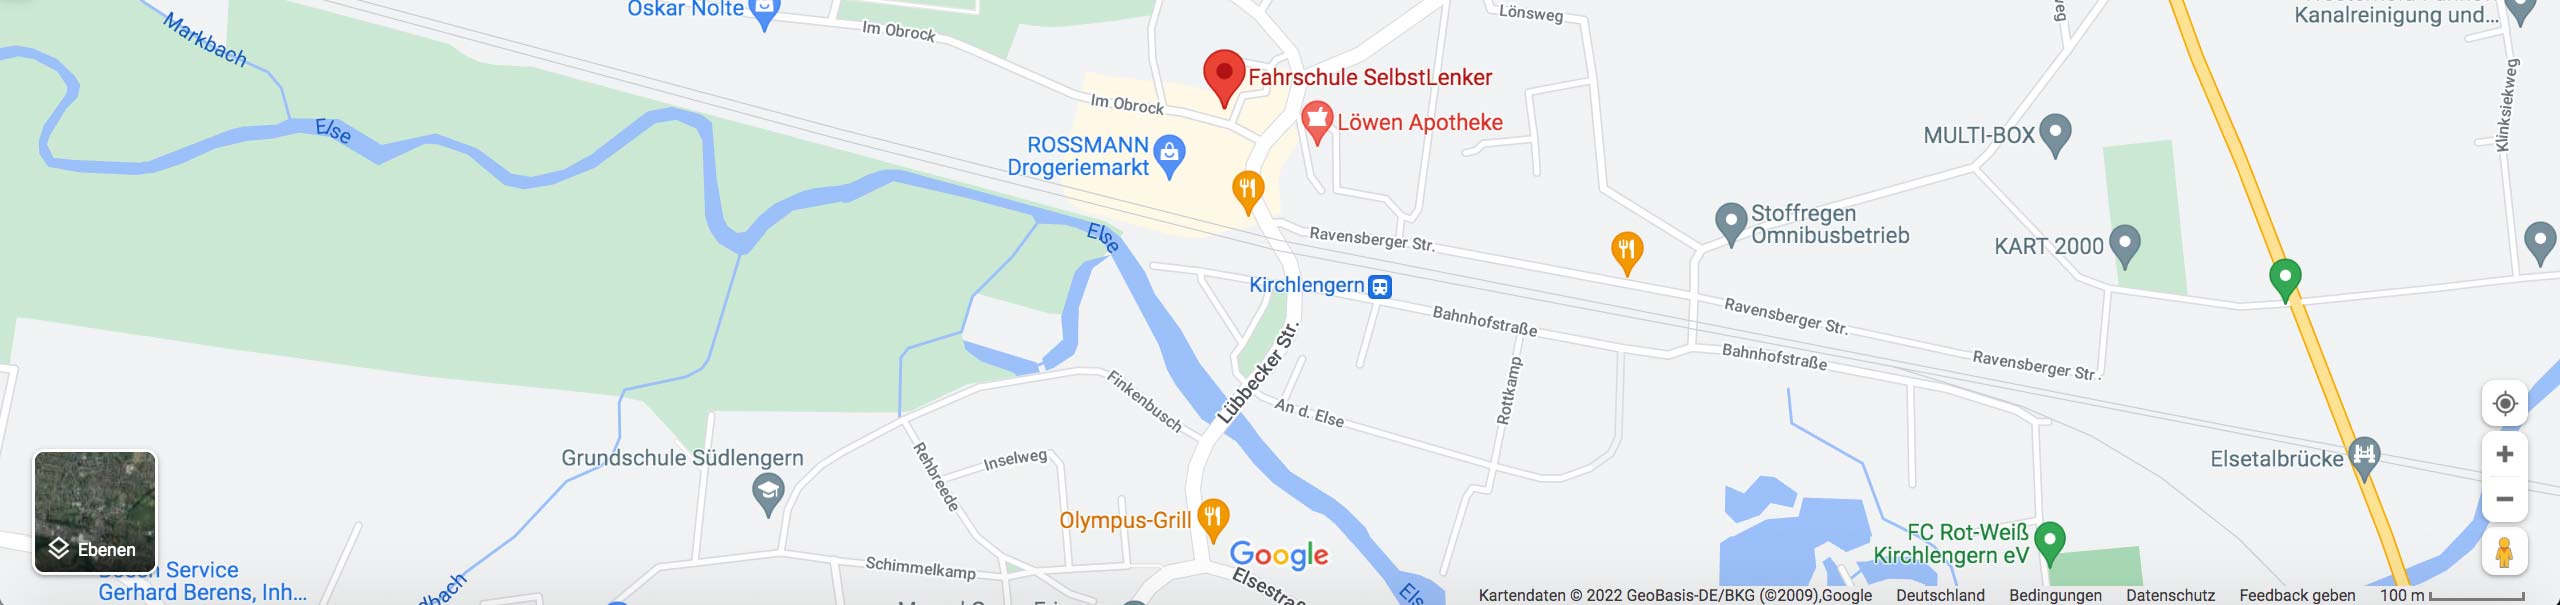 Karte vom Standort in Kirchlengern